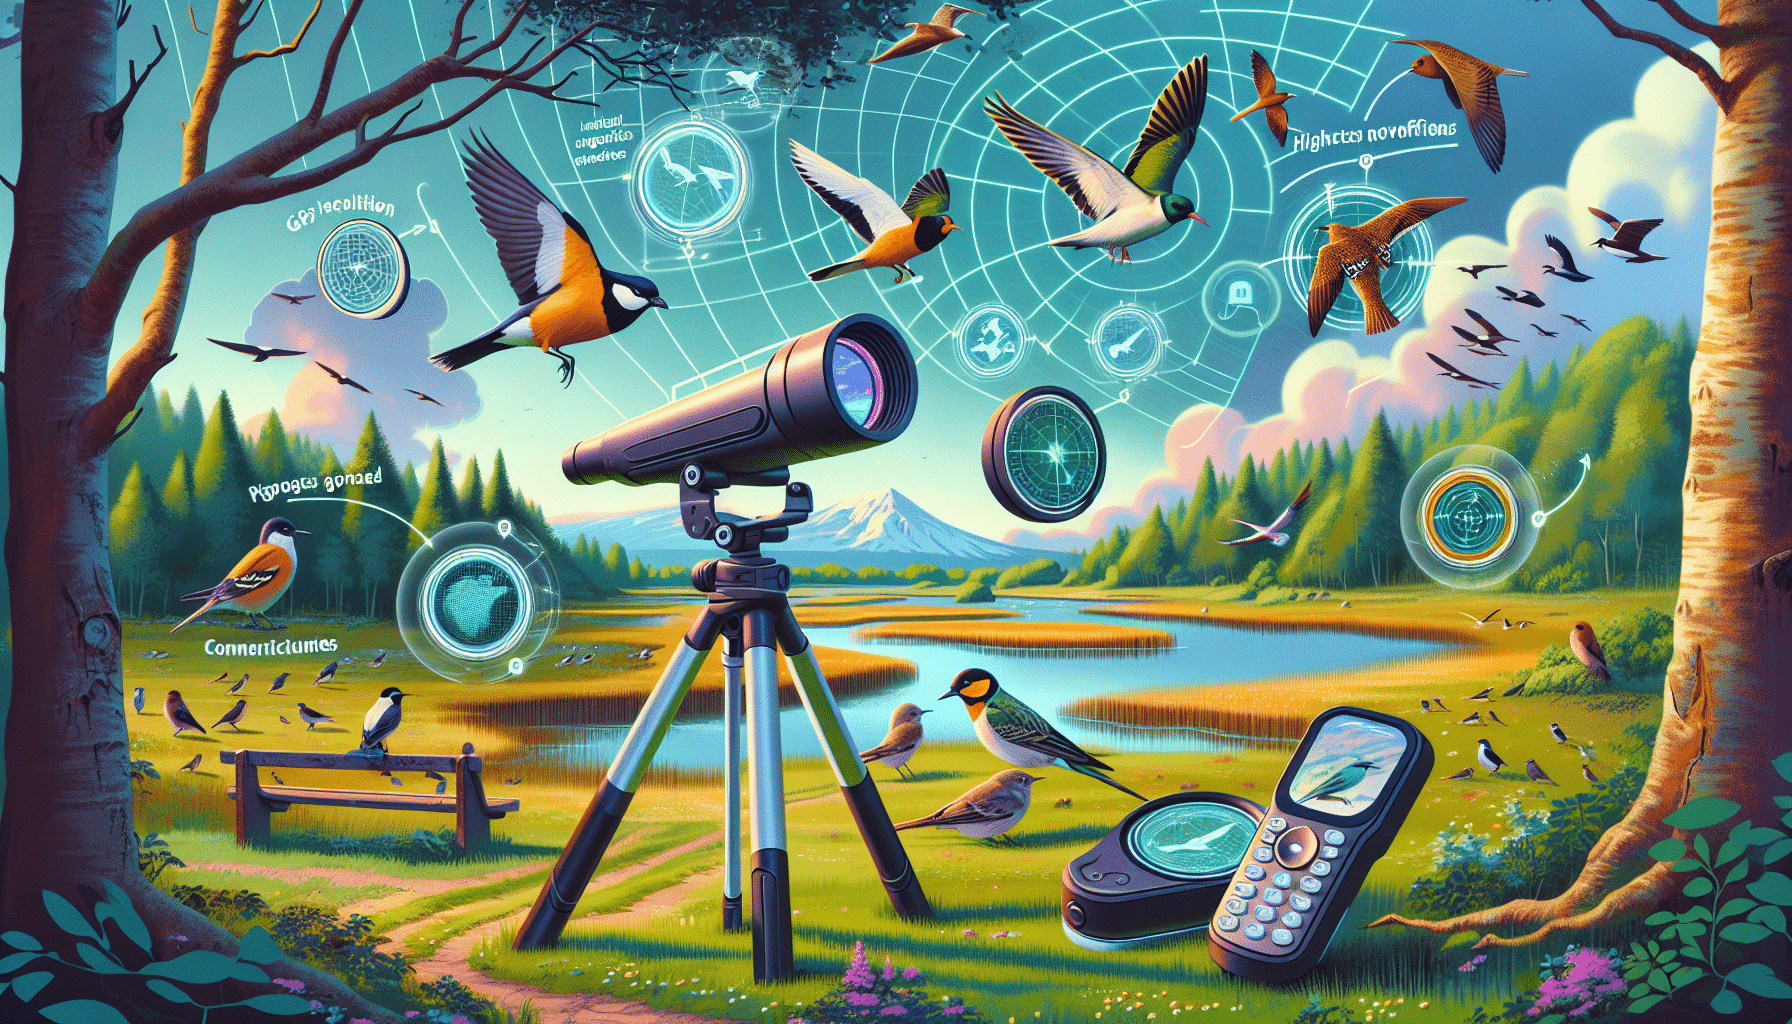 prozkoumejte, jak by tyto technologické inovace mohly způsobit revoluci v pozorování ptáků a pozvednout jej do nových výšin.